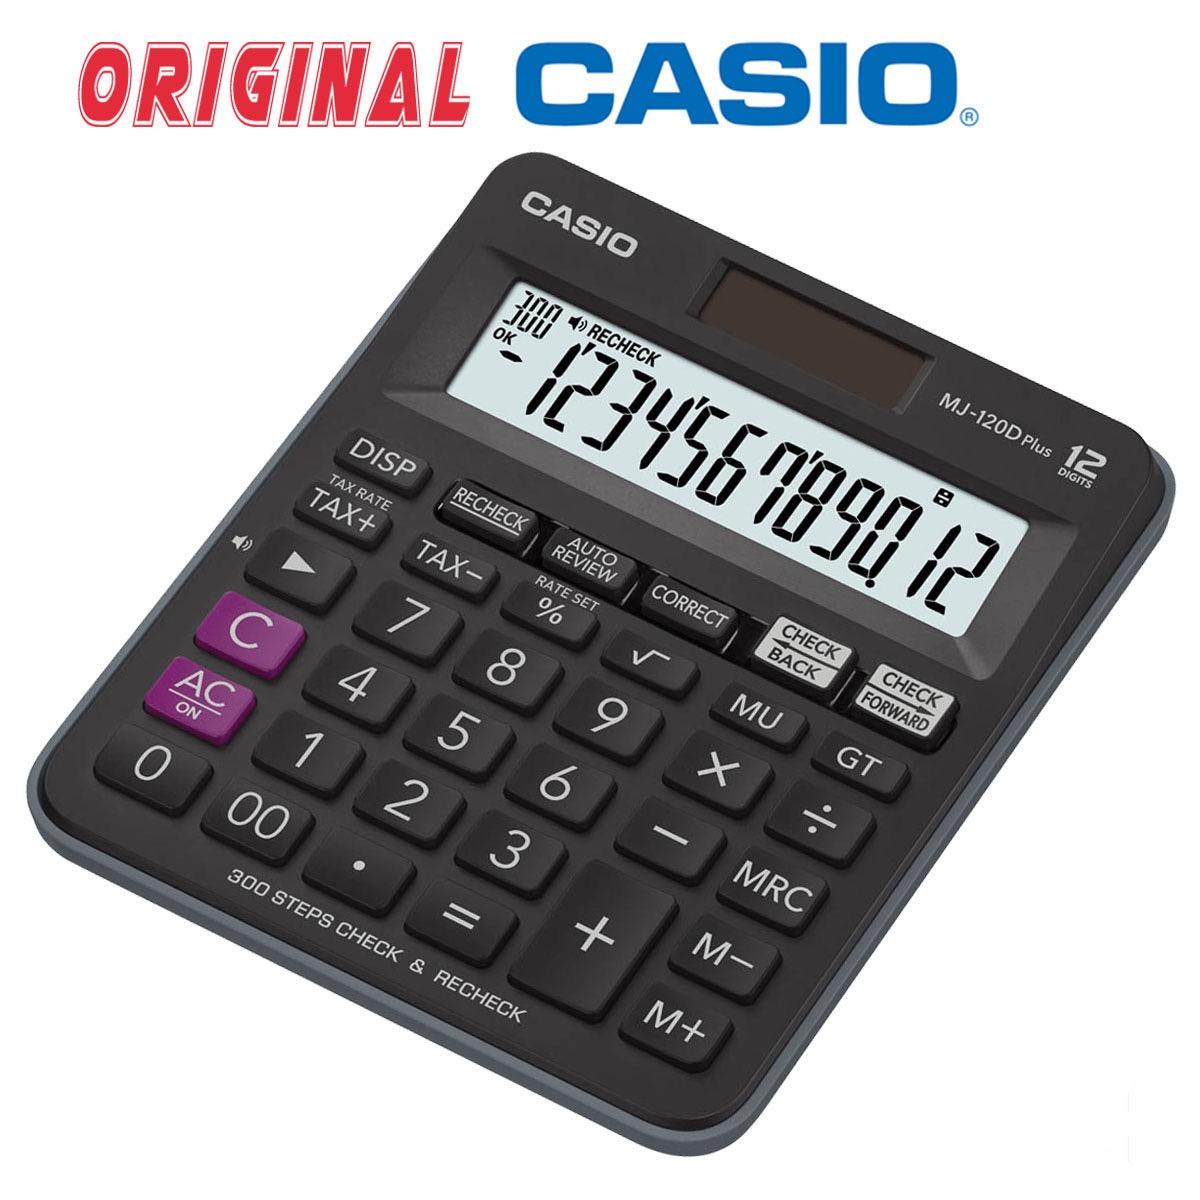 Casio Kalkulator 10 Digit MJ-100D Plus Original - Hitam